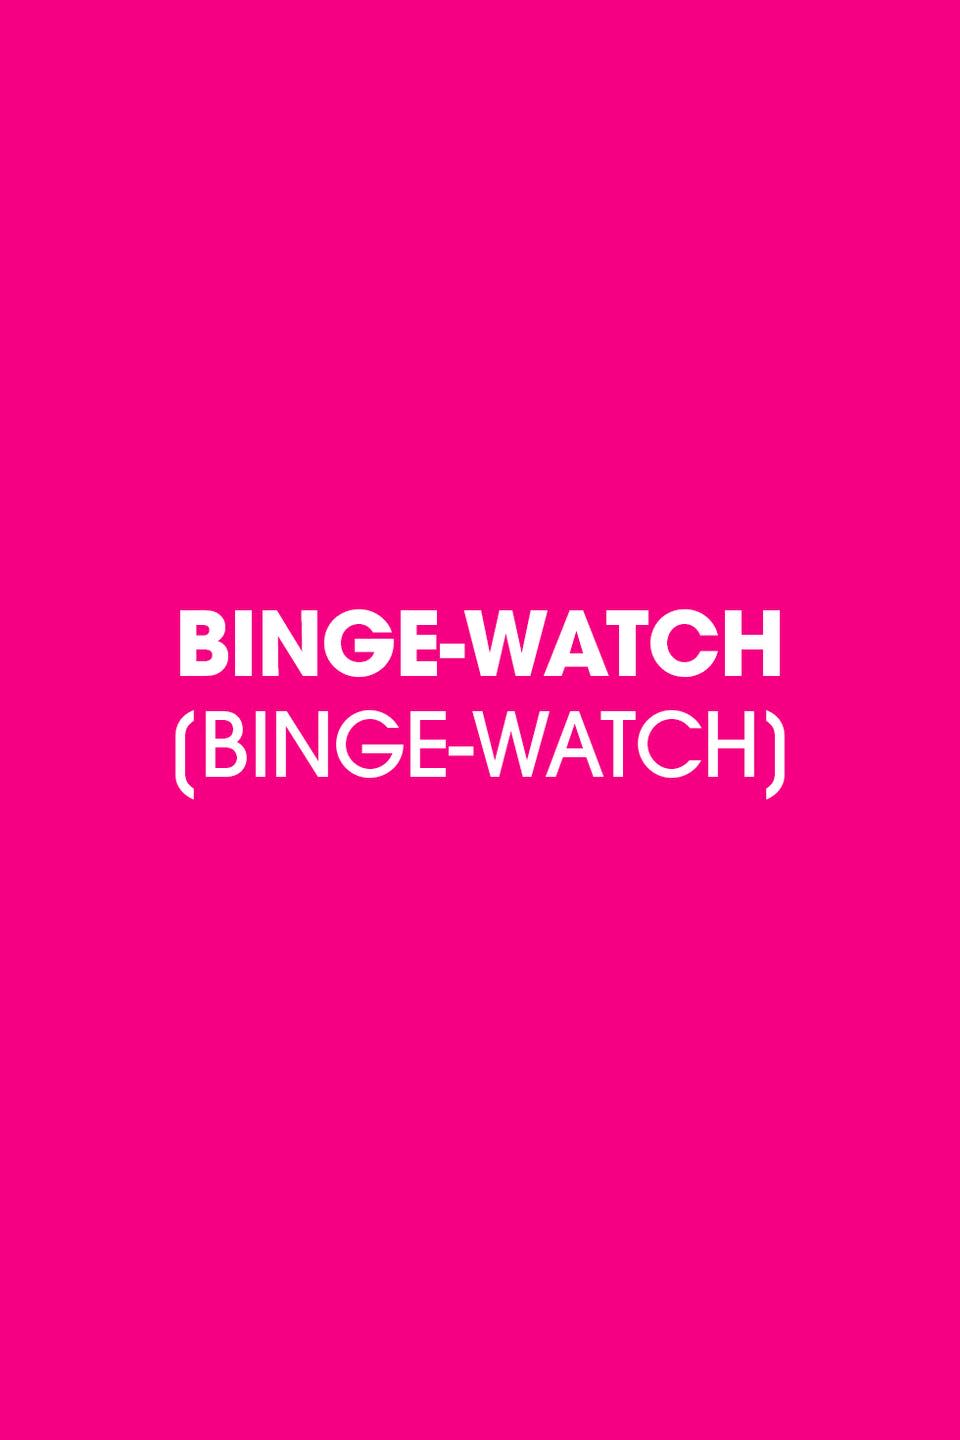 2003: Binge-Watch